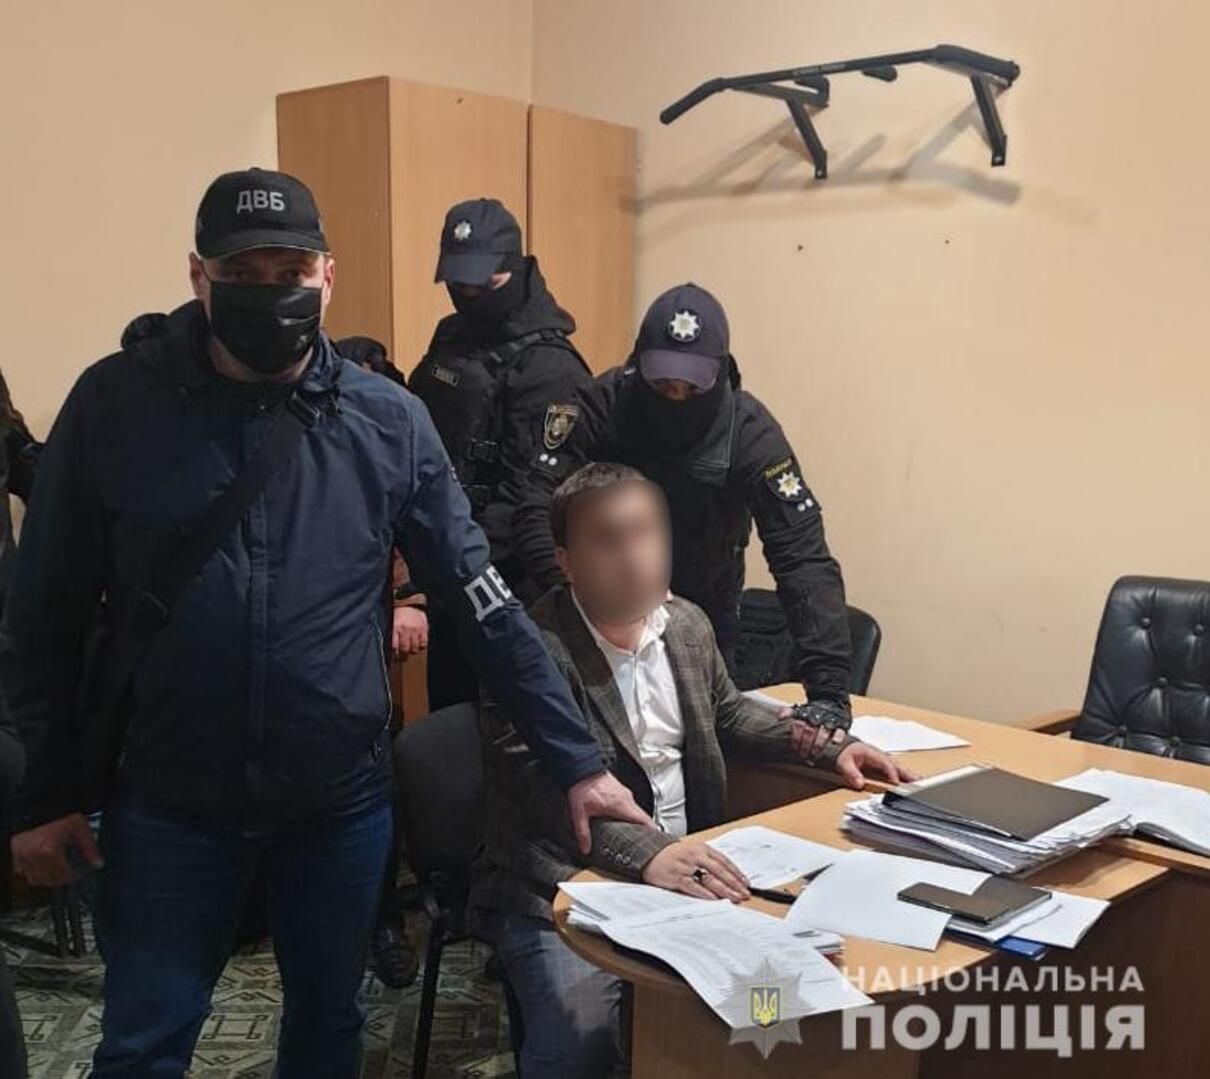 Россияне хотели дать взятку украинским полицейским в Павлограде